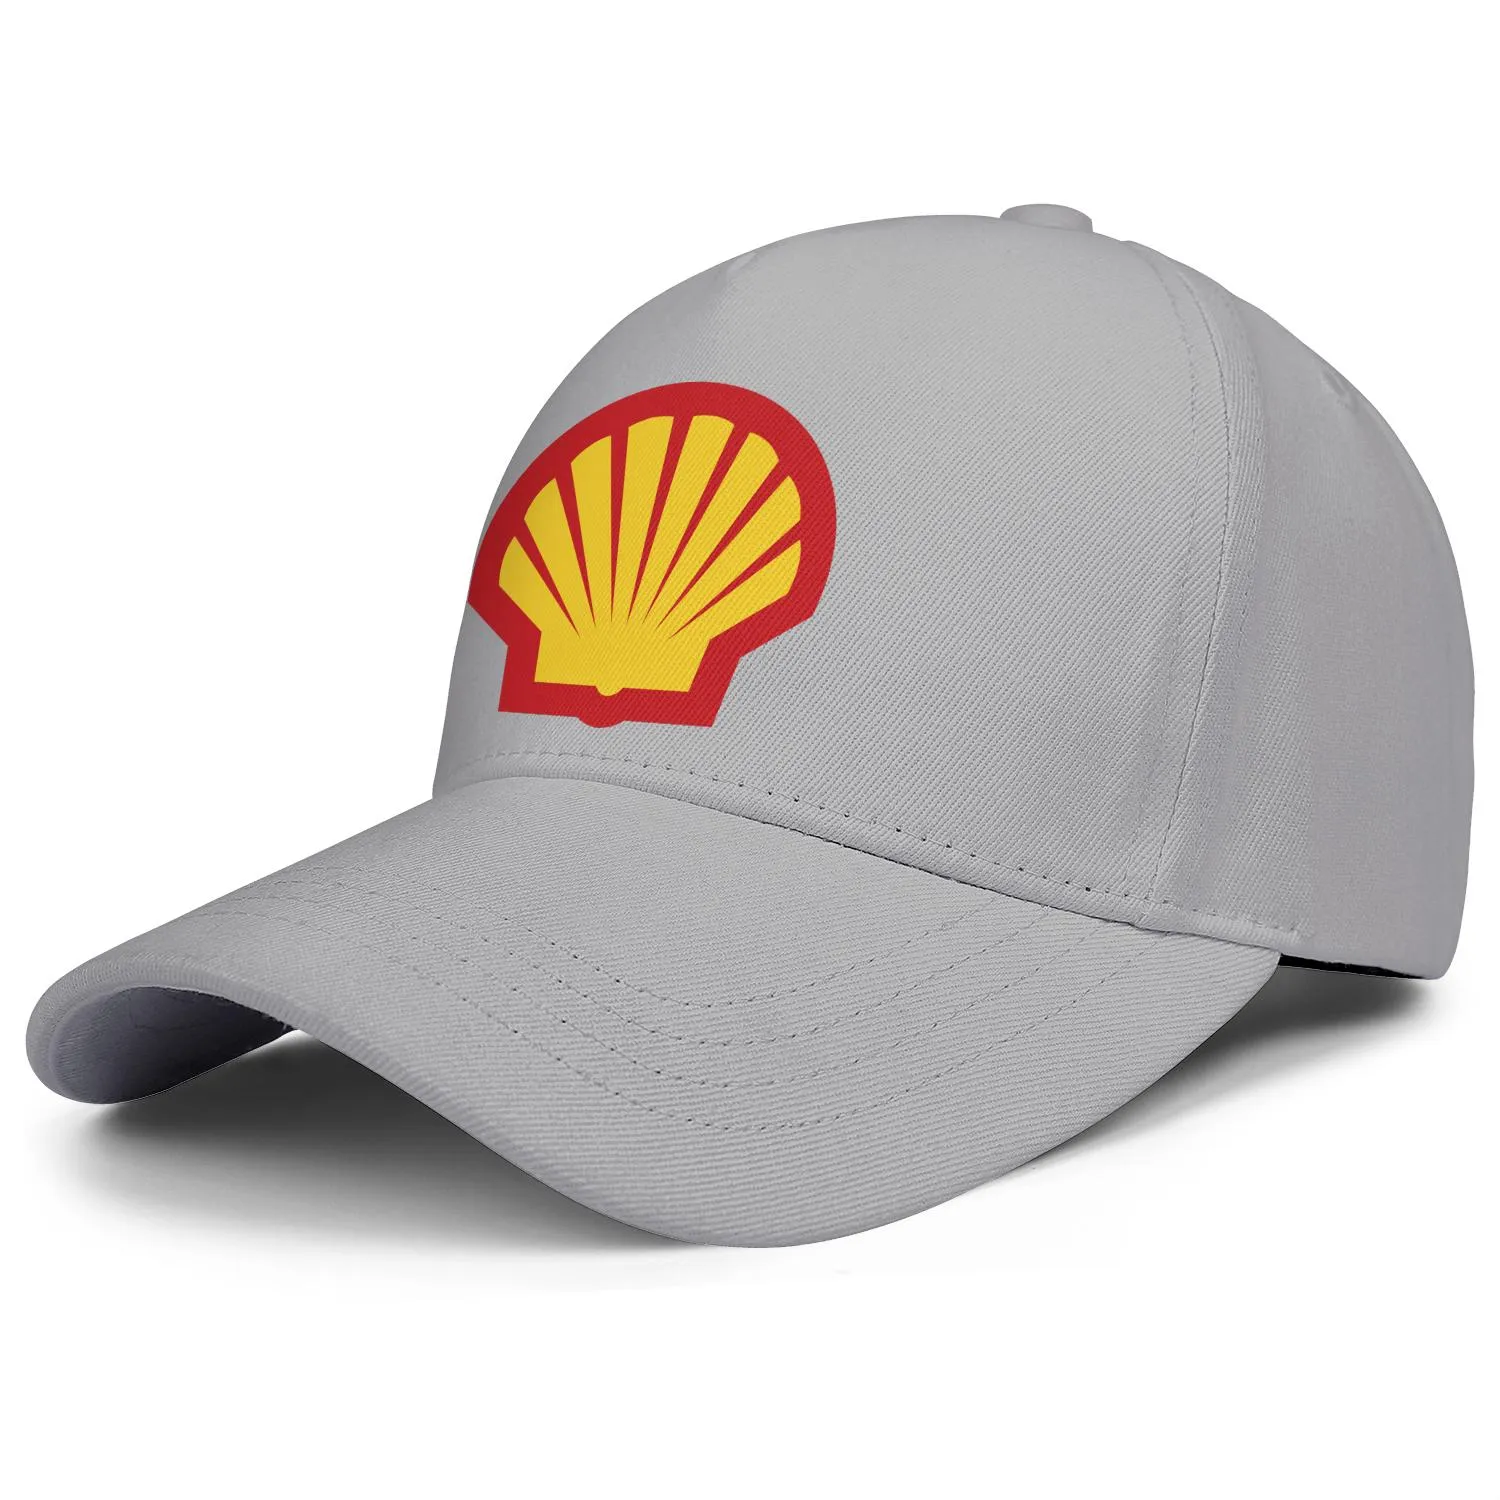 Logo della stazione di servizio Shell benzina berretto da camionista regolabile da uomo e da donna montato localizzatore di cappelli da baseball vintage carino Simbolo benzina903213177806